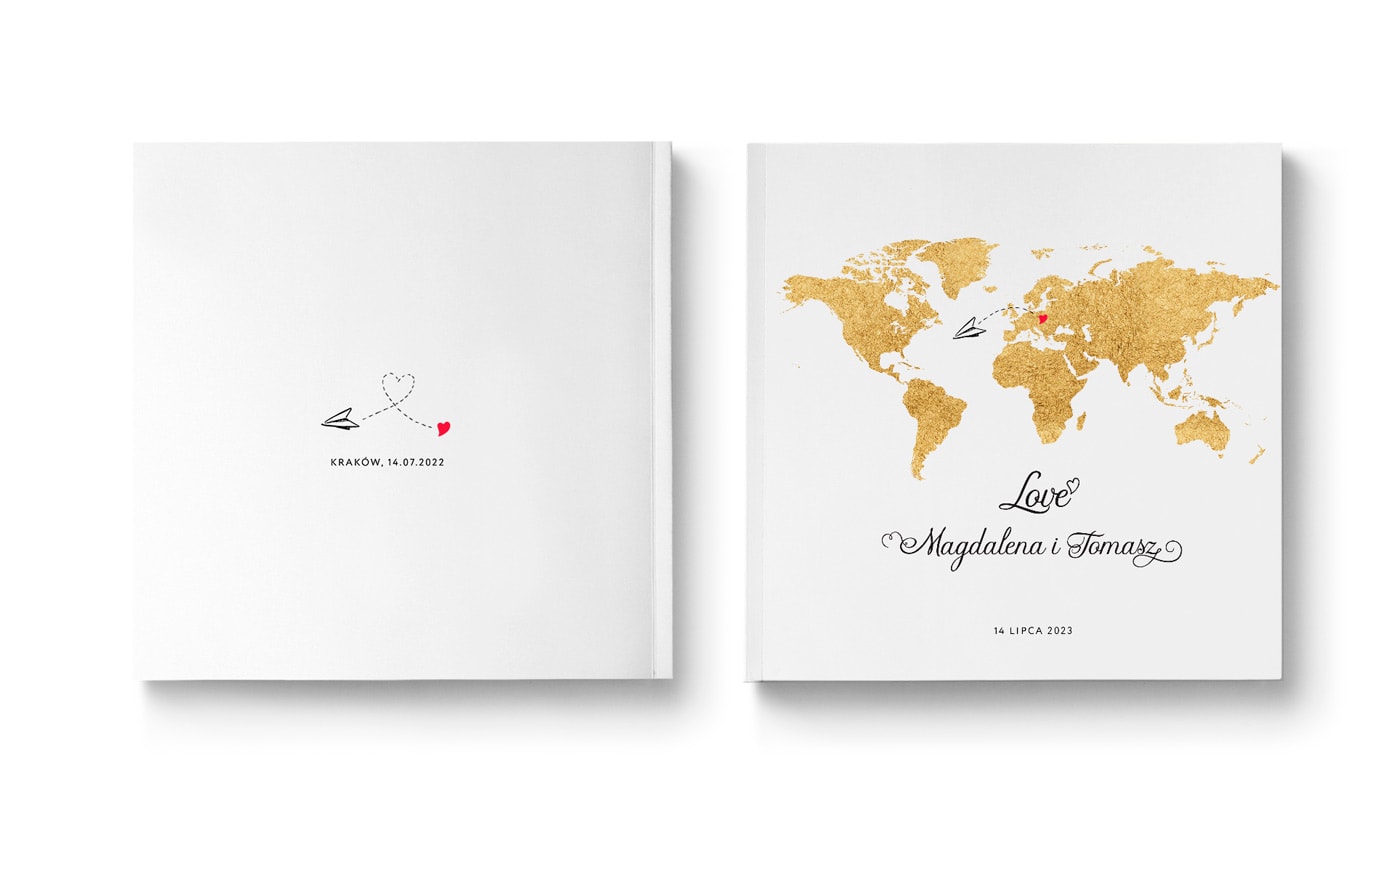 Księga wpisów gości z okładką z mapą świata w złotym kolorze